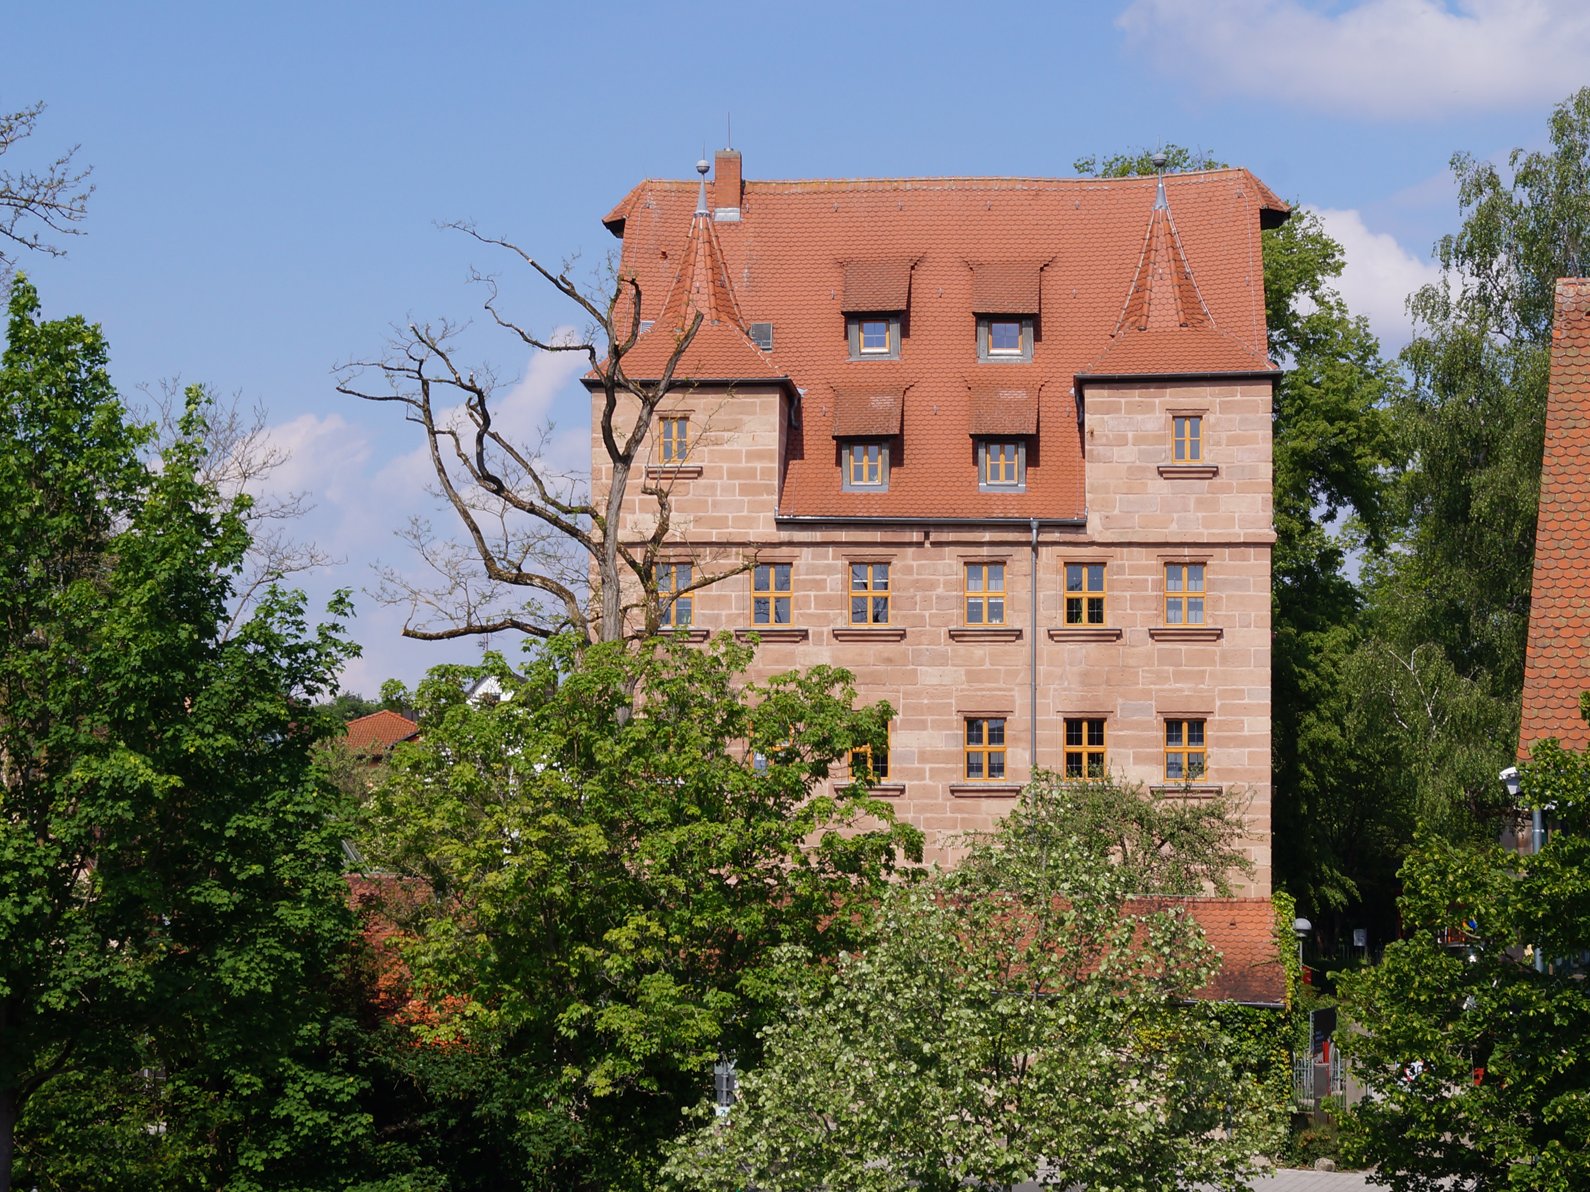 Vue extérieure du château Pfinzing avec ses petites tours